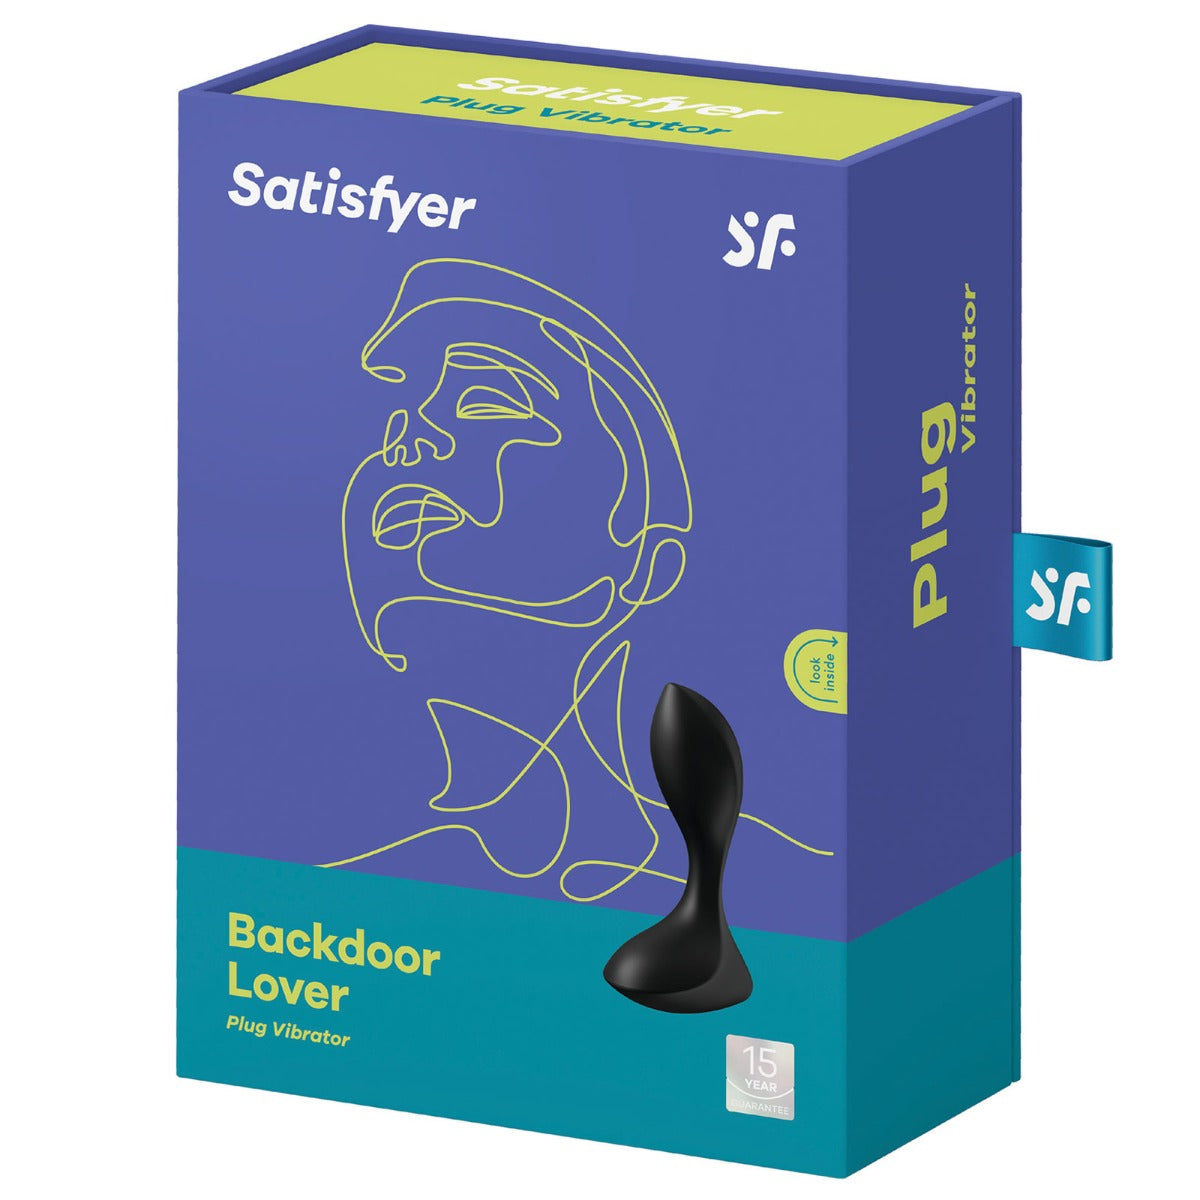 Satisfyer Backdoor Lover Butt Plug - Luxurious Pleasure and Sensations